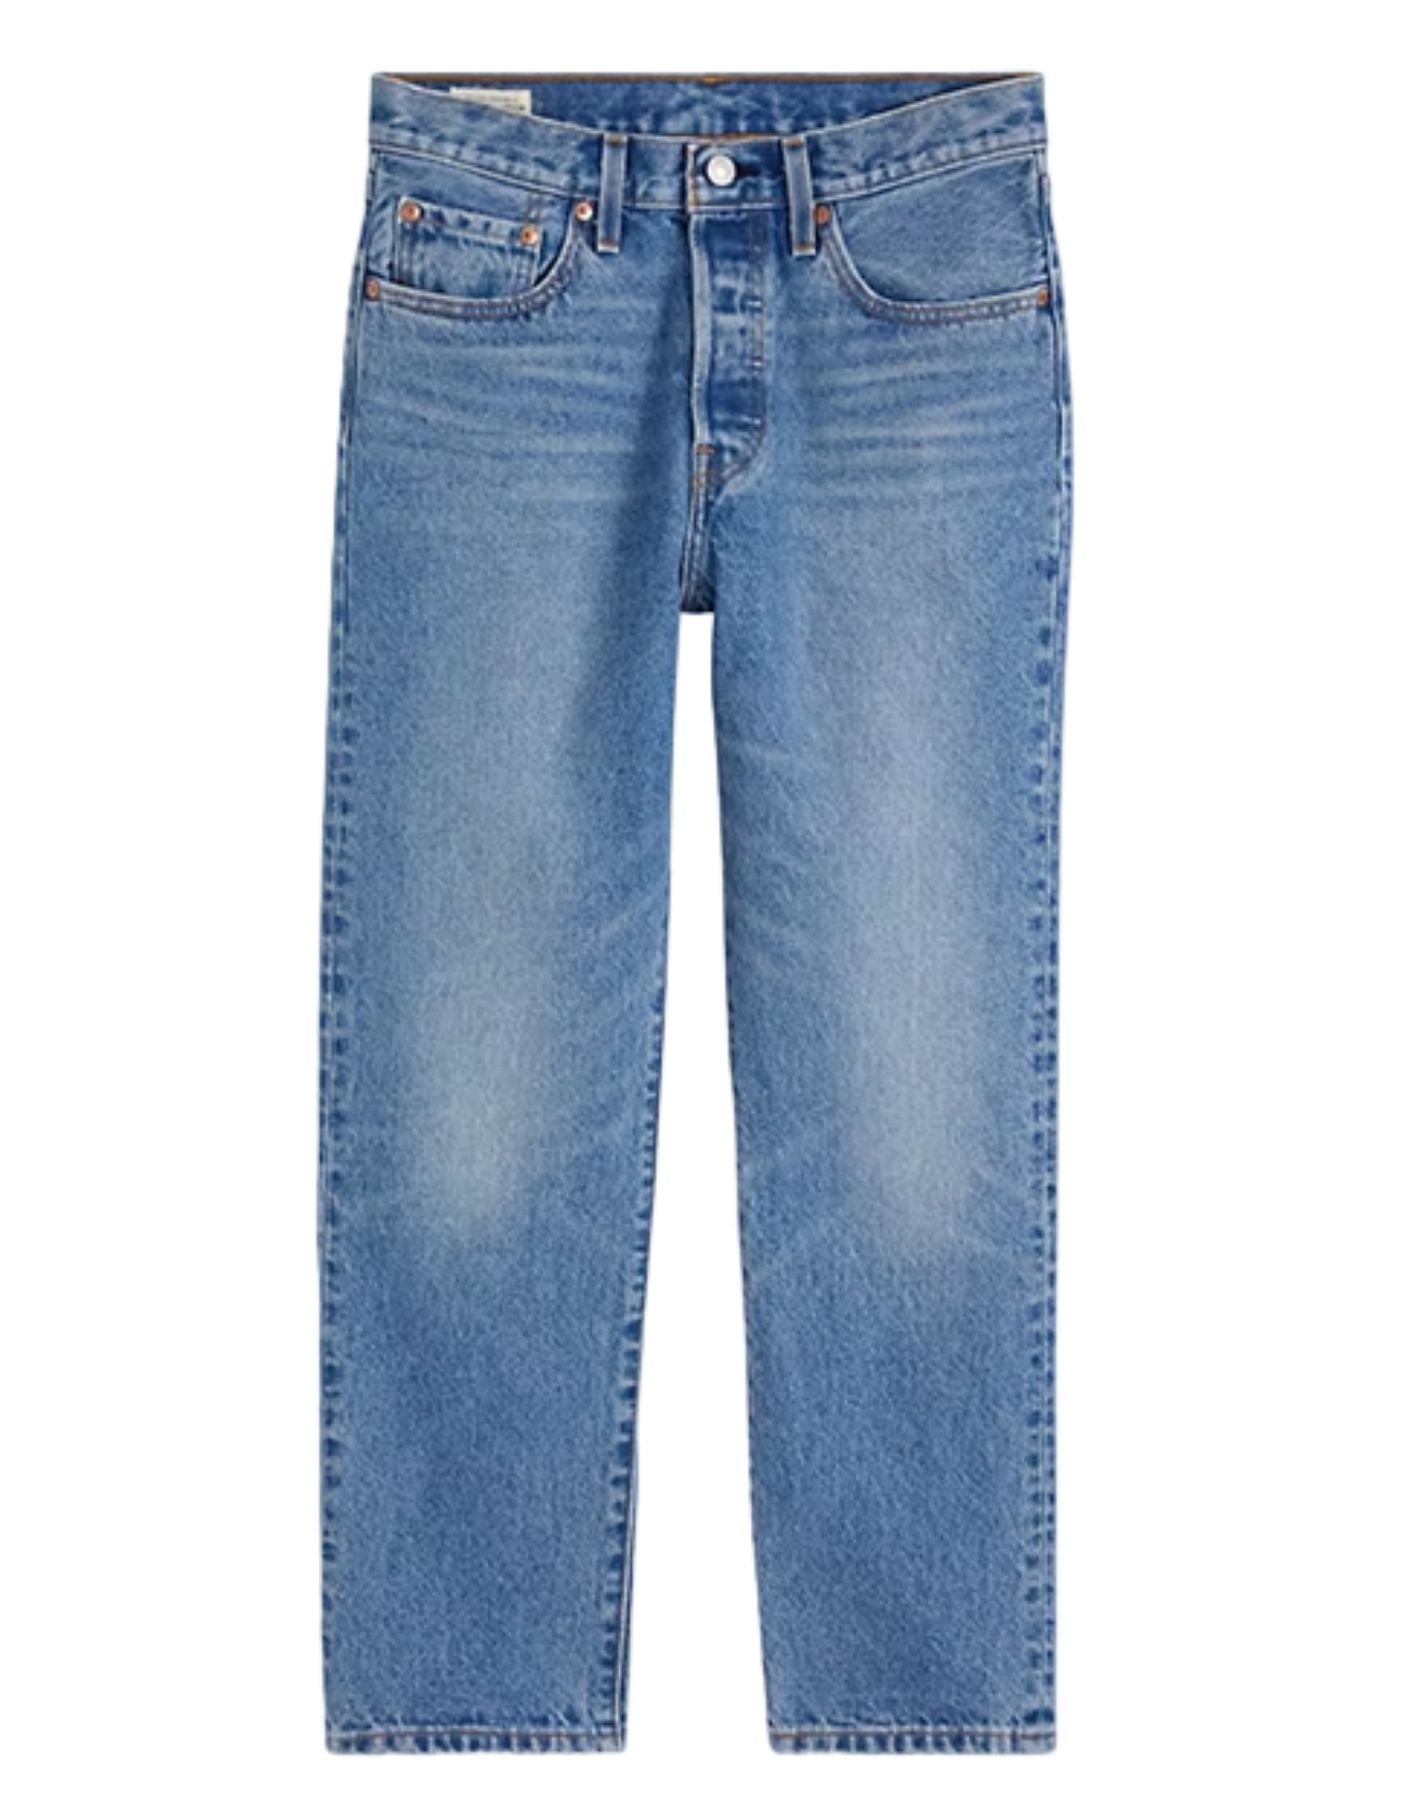 Jeans Woman 362000236 Levi's